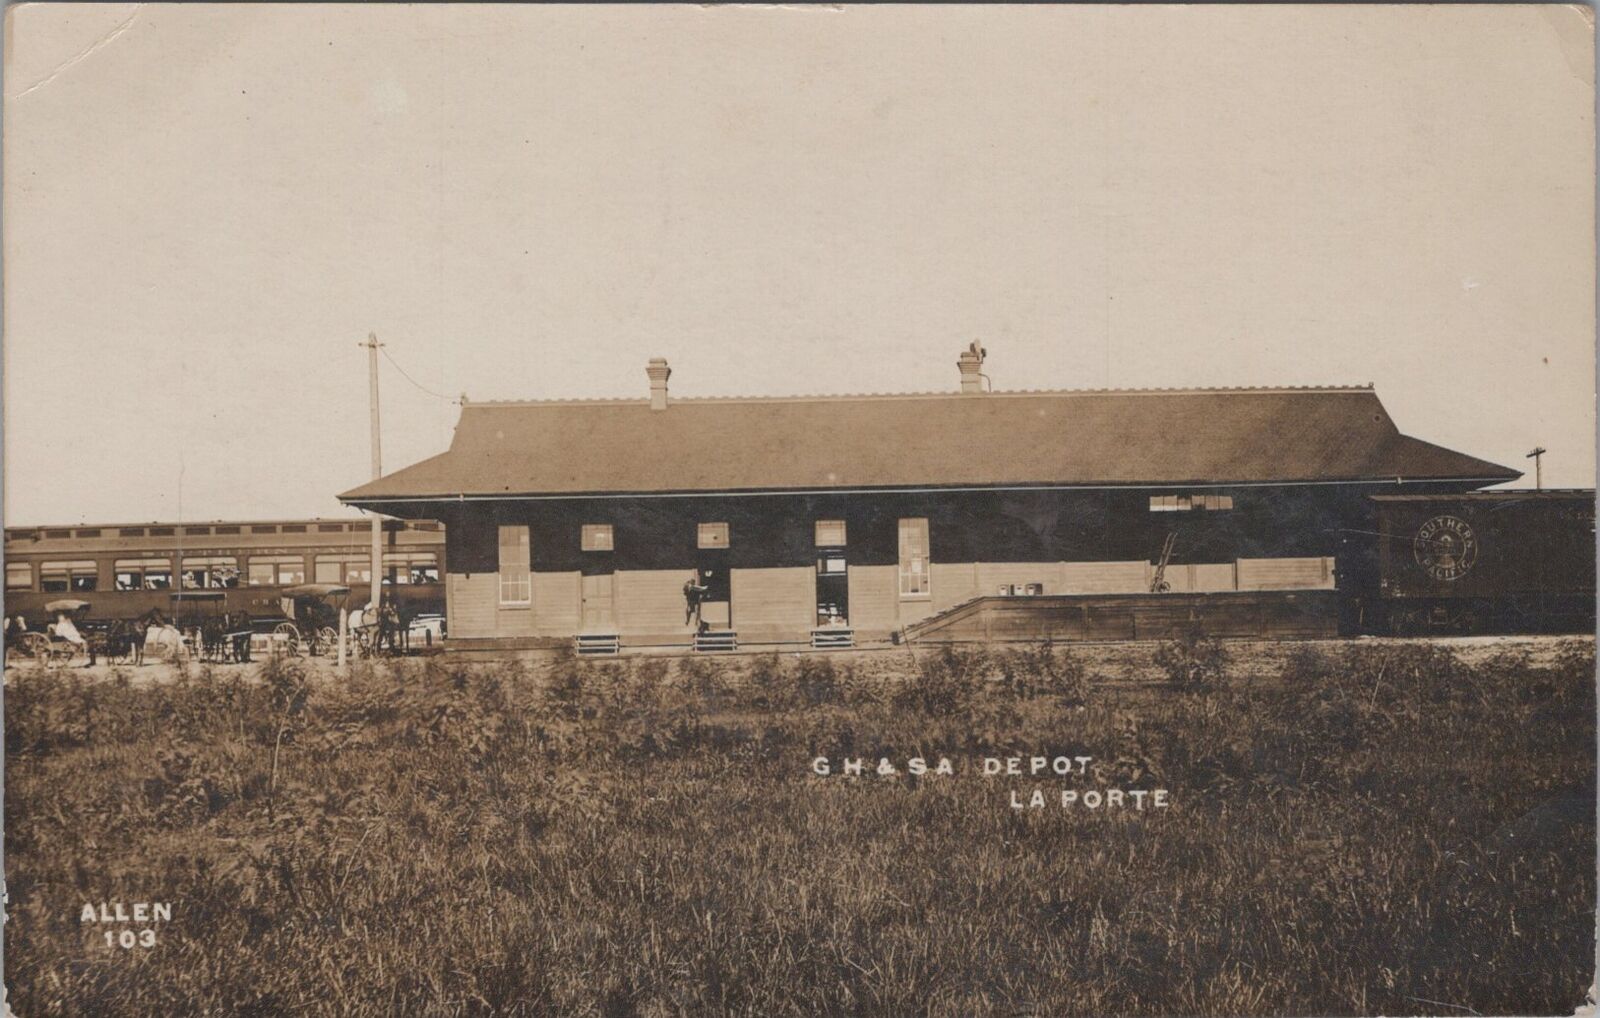 Galveston Harrisburg San Antonio RR Depot,La Porte Texas 1910 RPPC Postcard